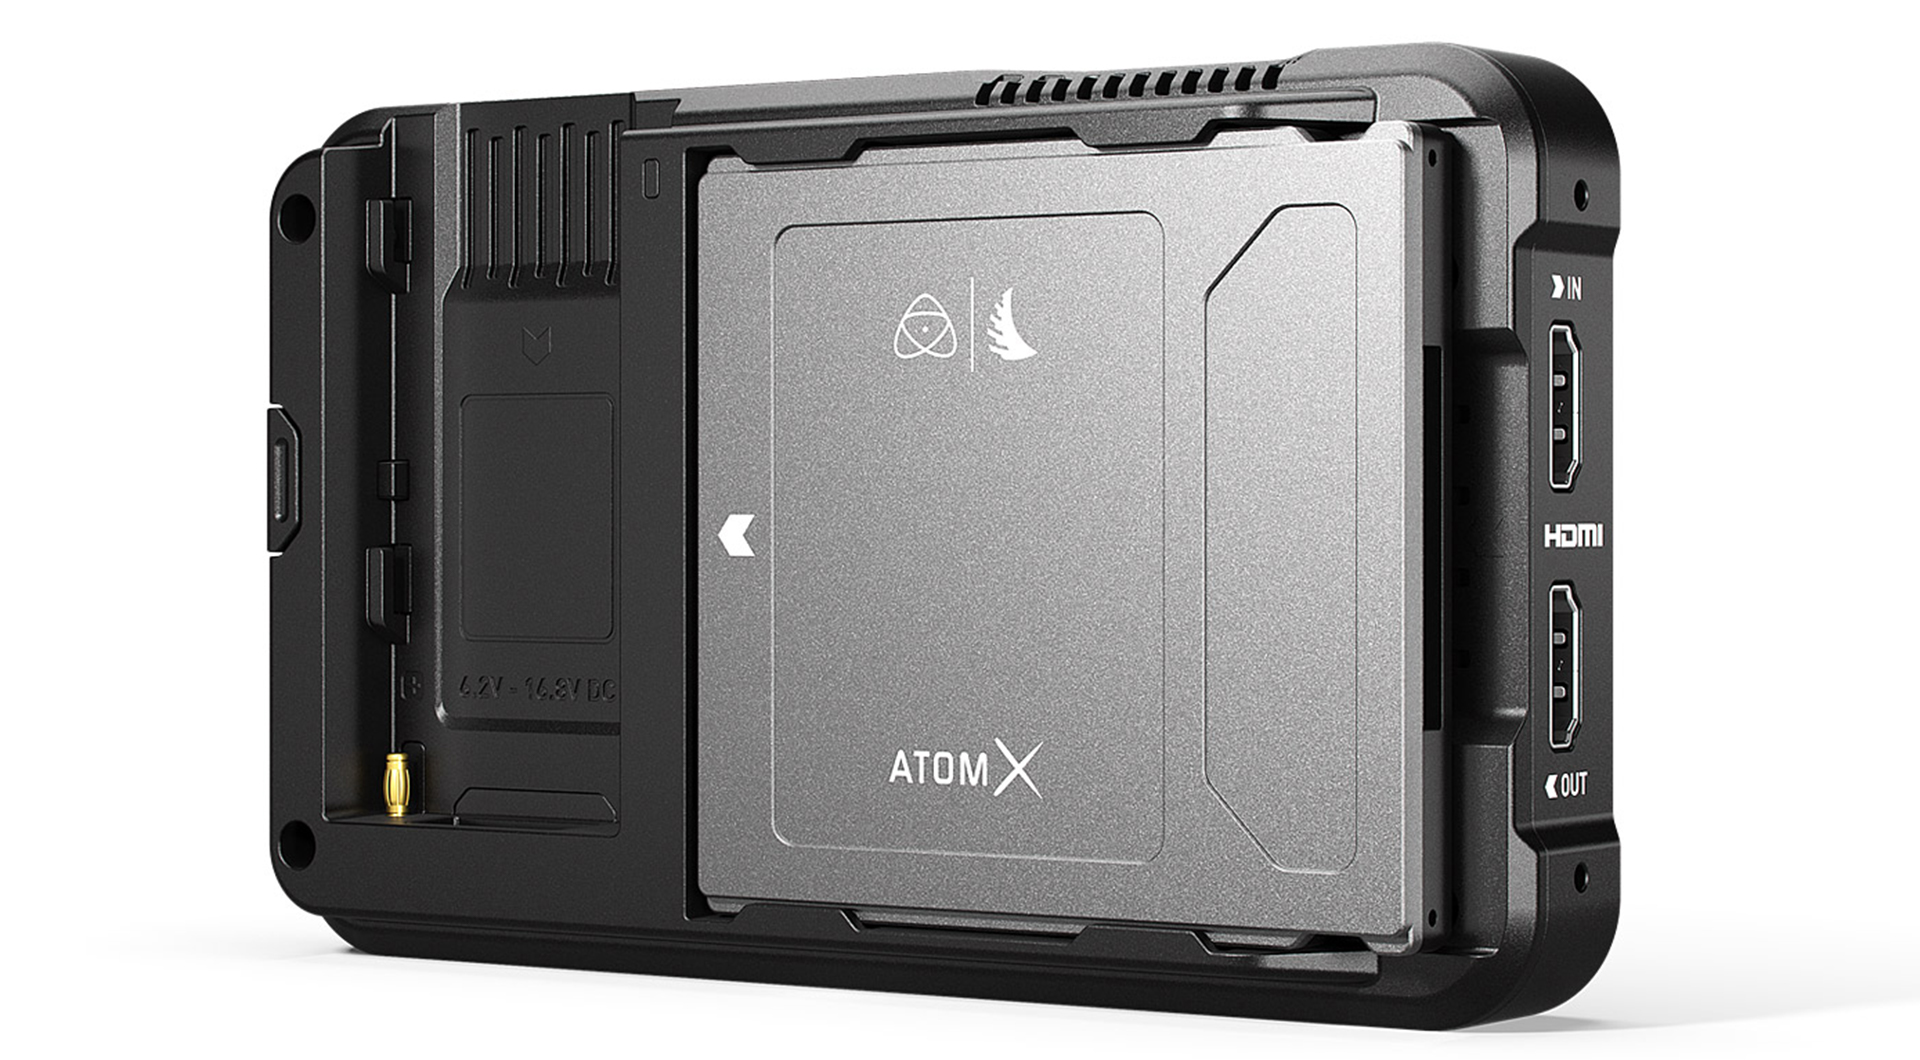 ソニーがAtomX対応のSSDminiドライブを発表 | CineD